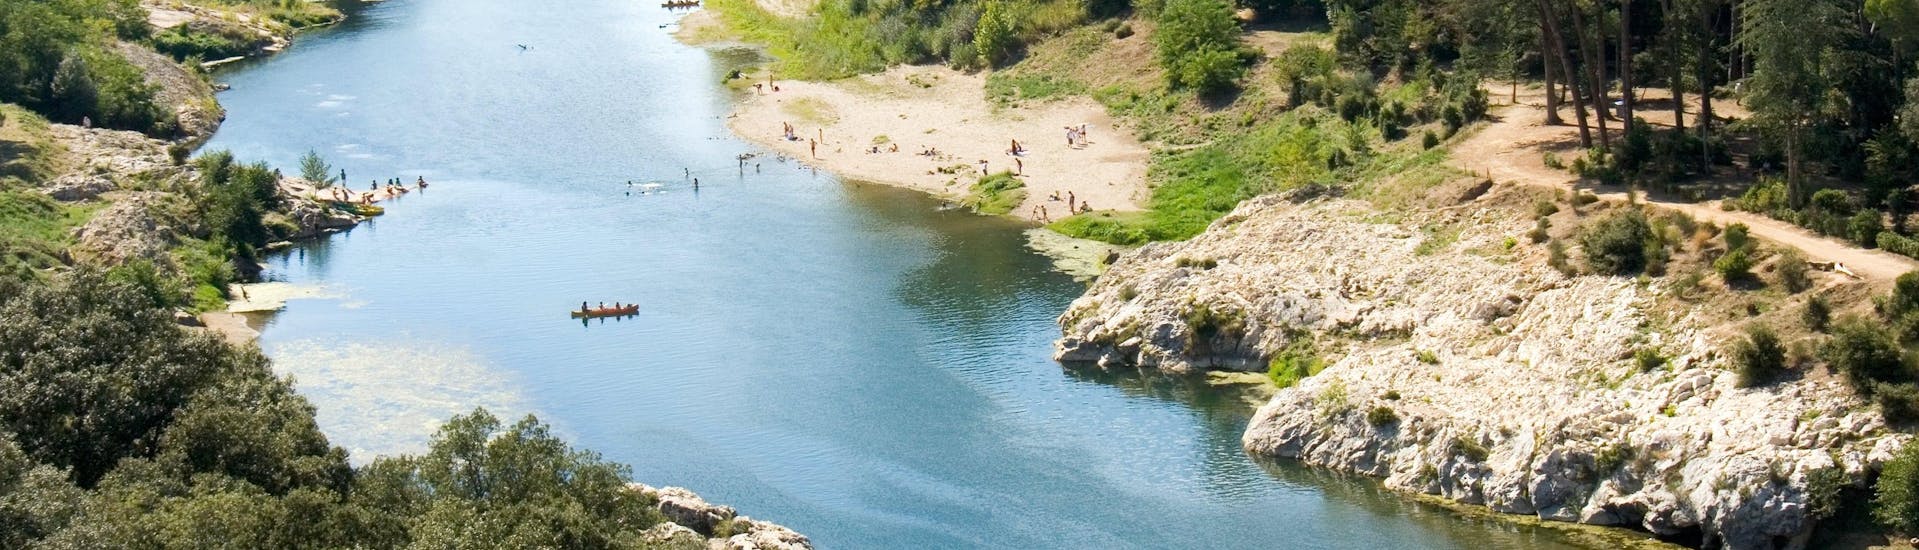 Vue aérienne du Gardon, une des rivières populaires en France pour la pratique du canoë, passant sous le pont du Gard.